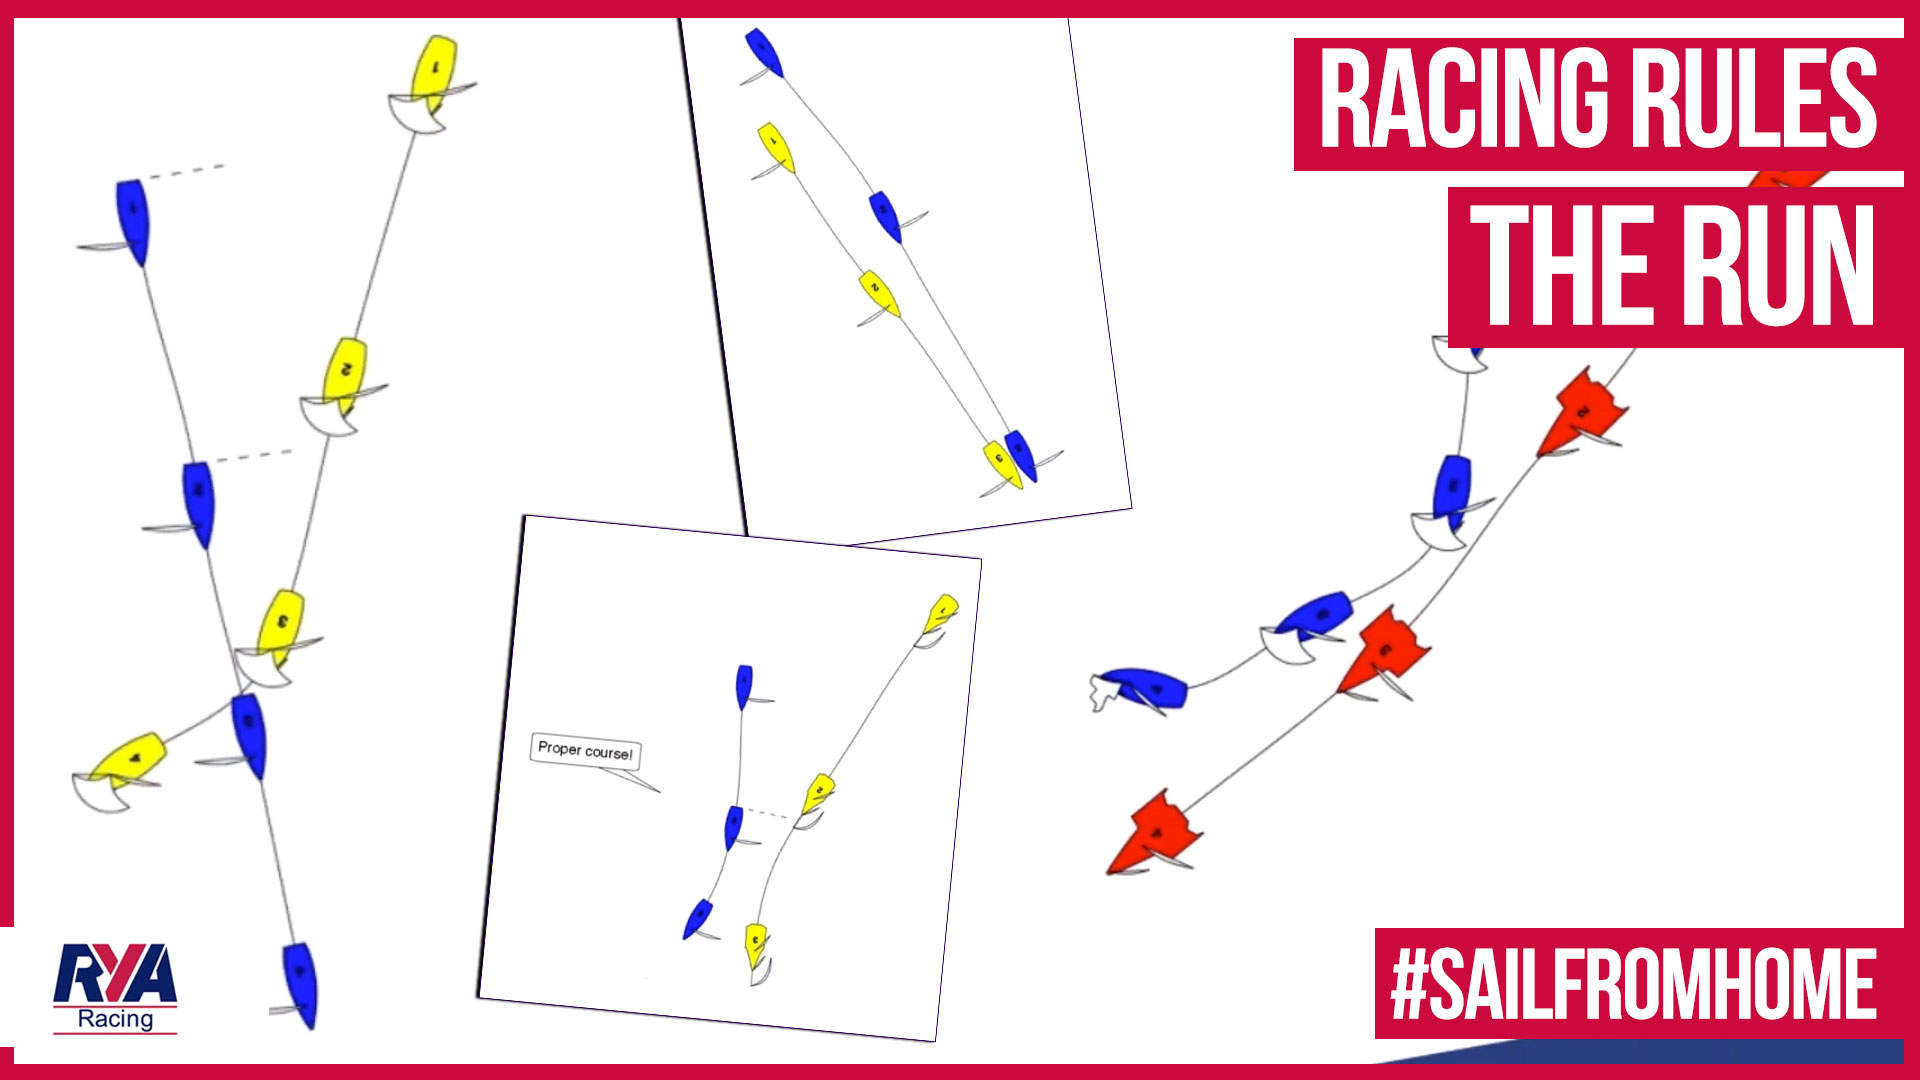 Diagramatic representation of racing rules scenarios